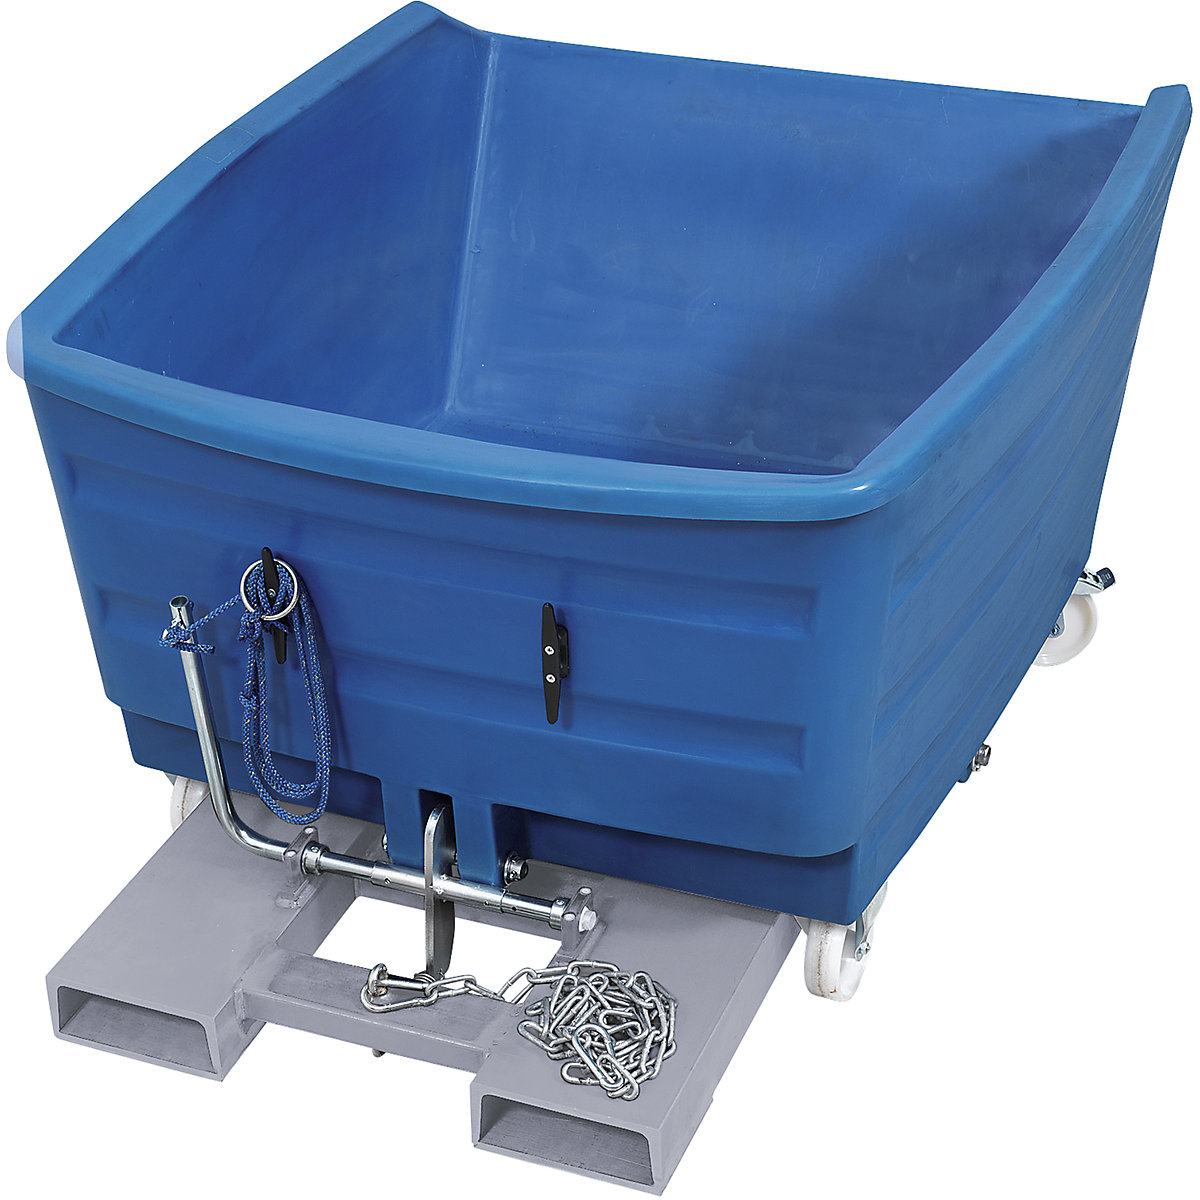 Schwerlast-Kippbehälter aus PE, Volumen 0,5 m³, blau-11